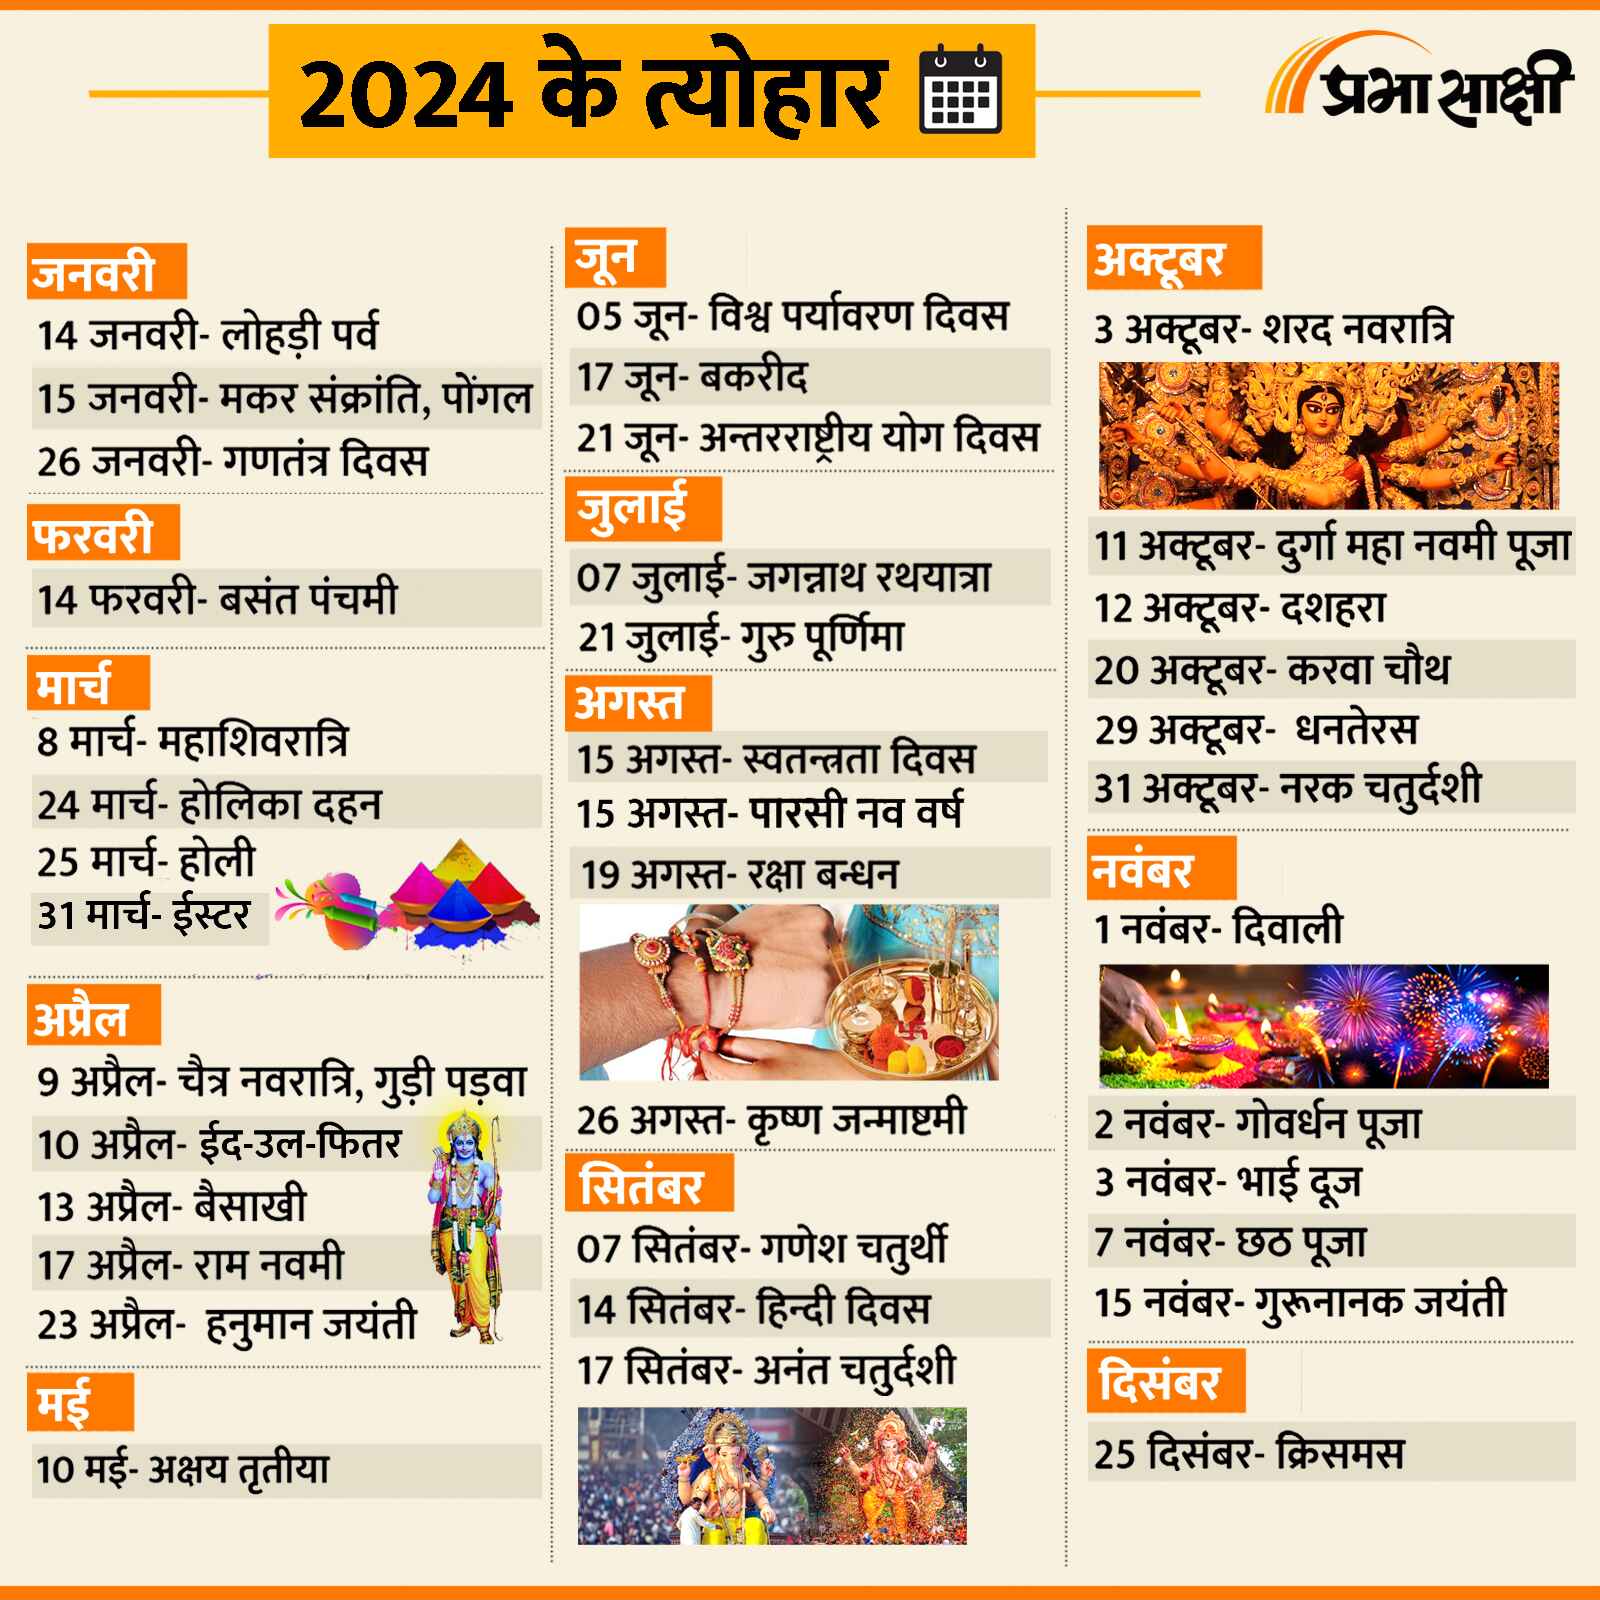 Festival Calendar 2024 । देखें साल 2024 के सभी प्रमुख व्रतत्योहारों की